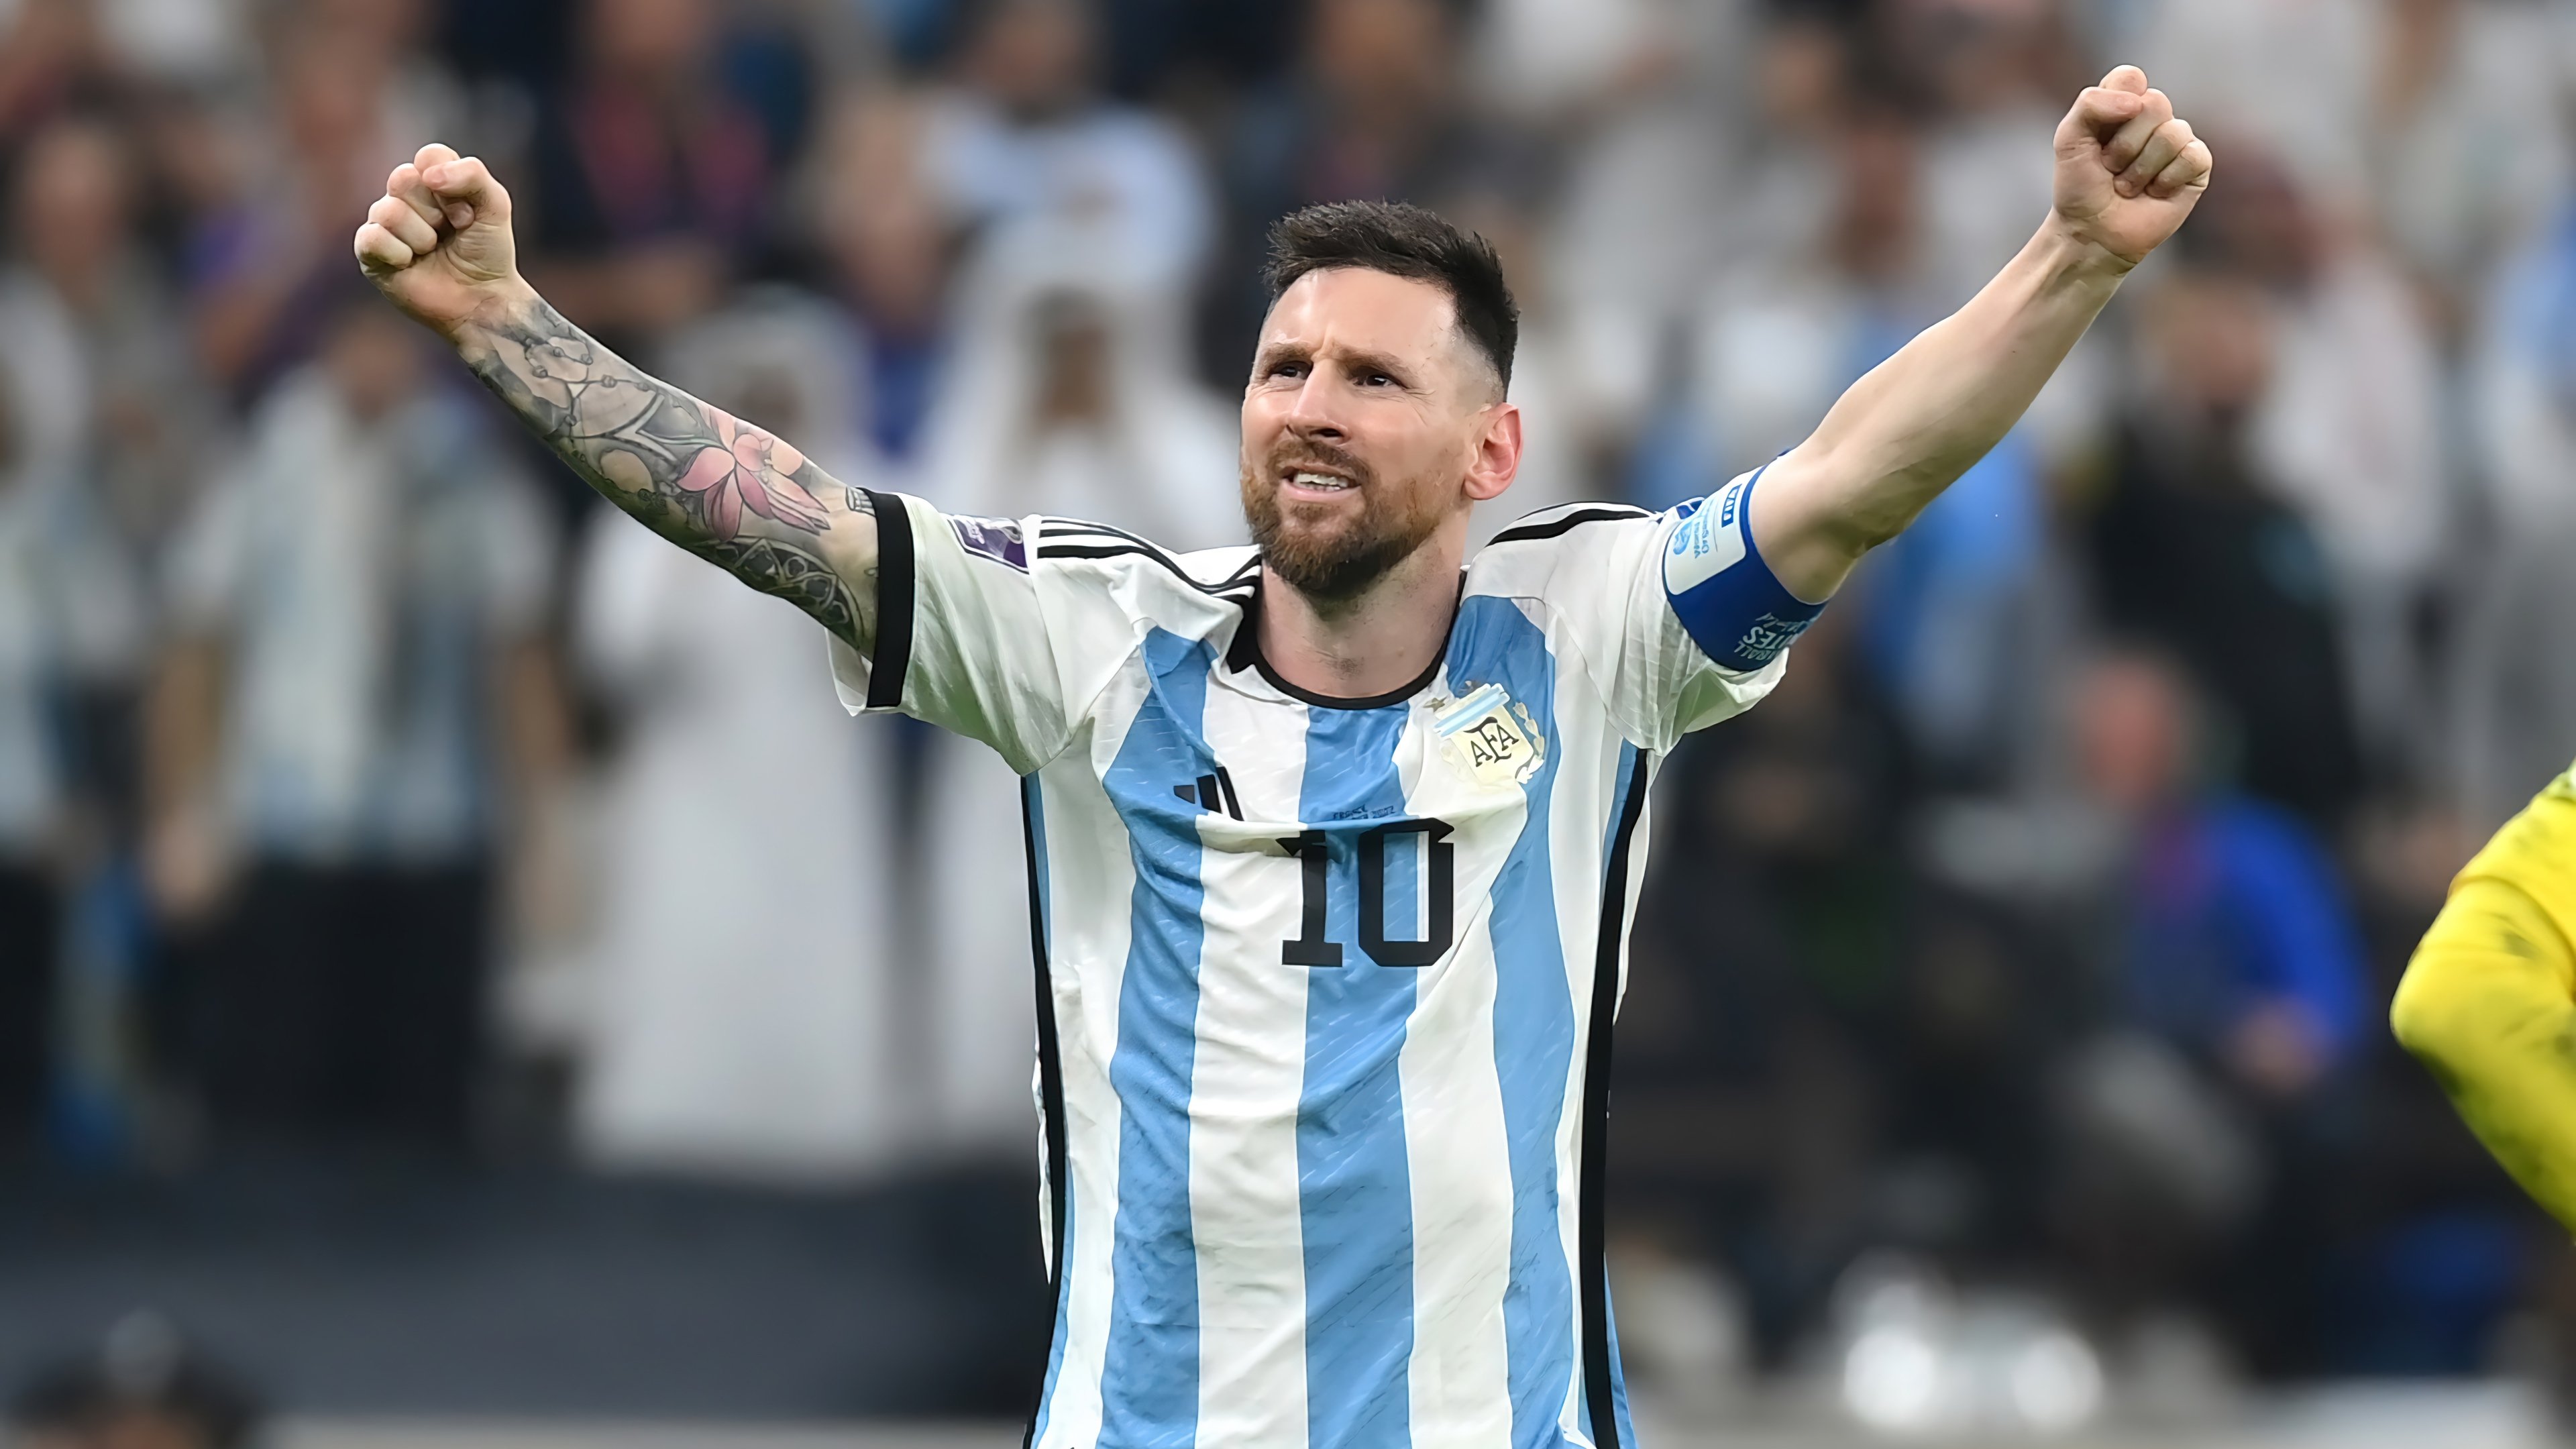 Fondos de pantalla Messi en la Selección Argentina